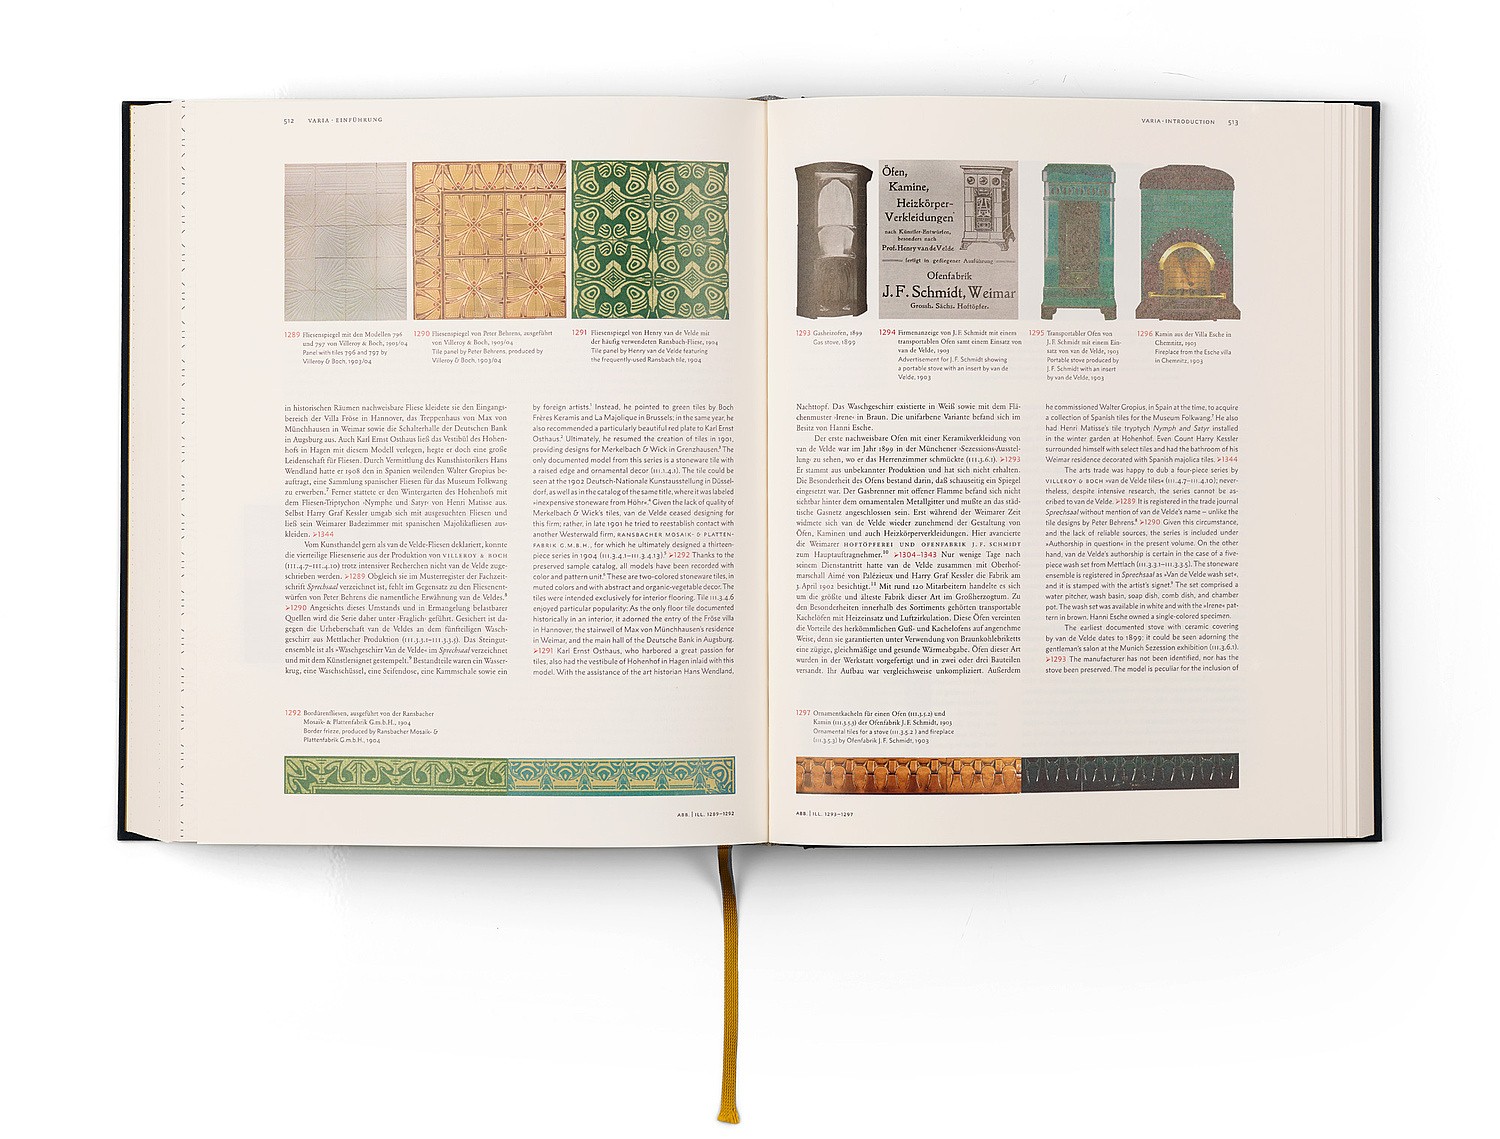 Einführungstext zum Kapitel "Varia" mit Abbildungen von Fliesen, Kacheln, Öfen und Kaminen (© Papenfuss | Atelier)